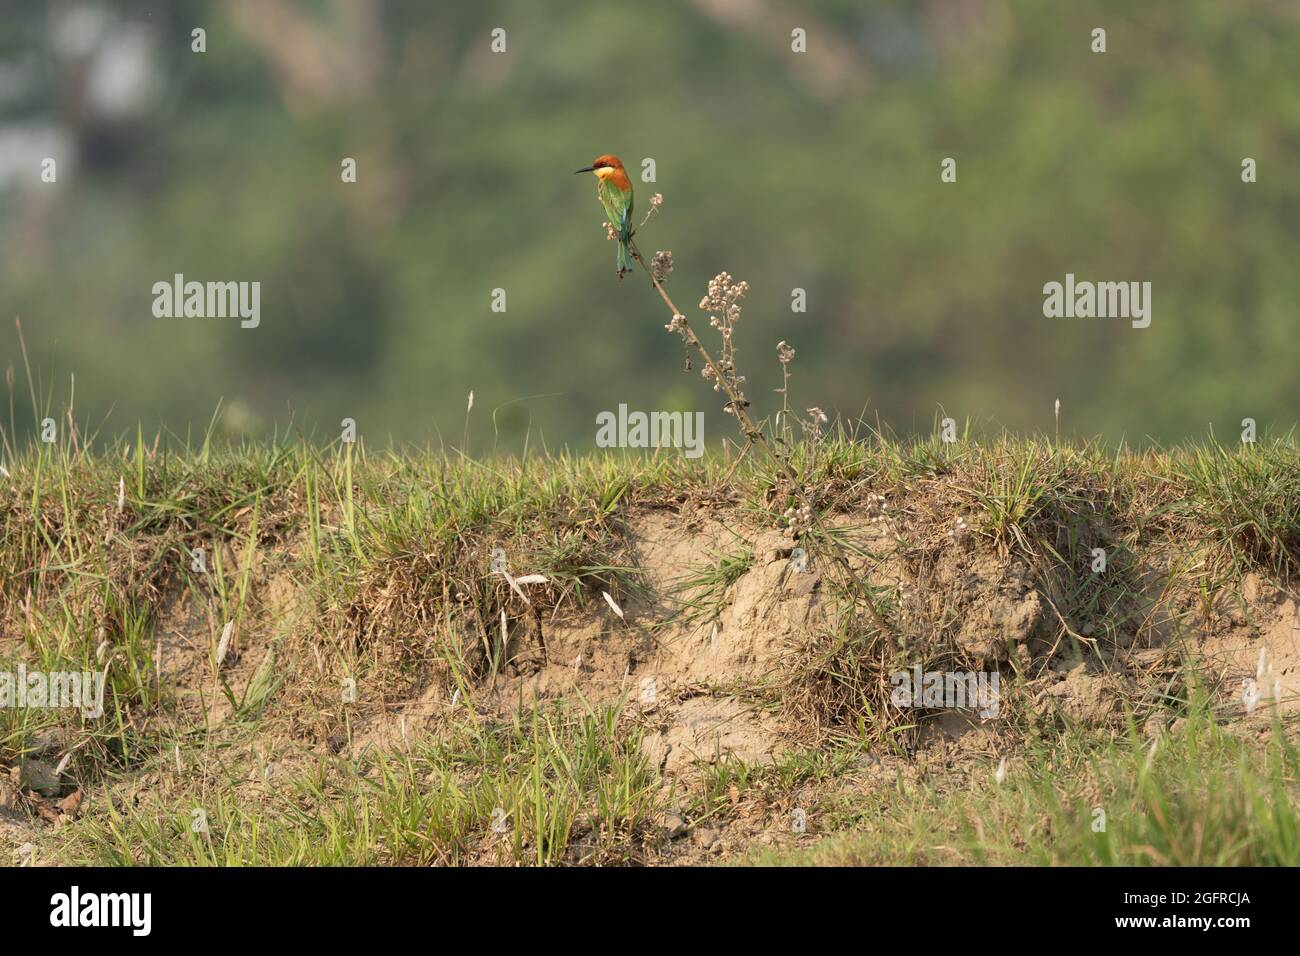 Vista panoramica di un apicollo di Bohm arroccato su una pianta su uno sfondo sfocato Foto Stock